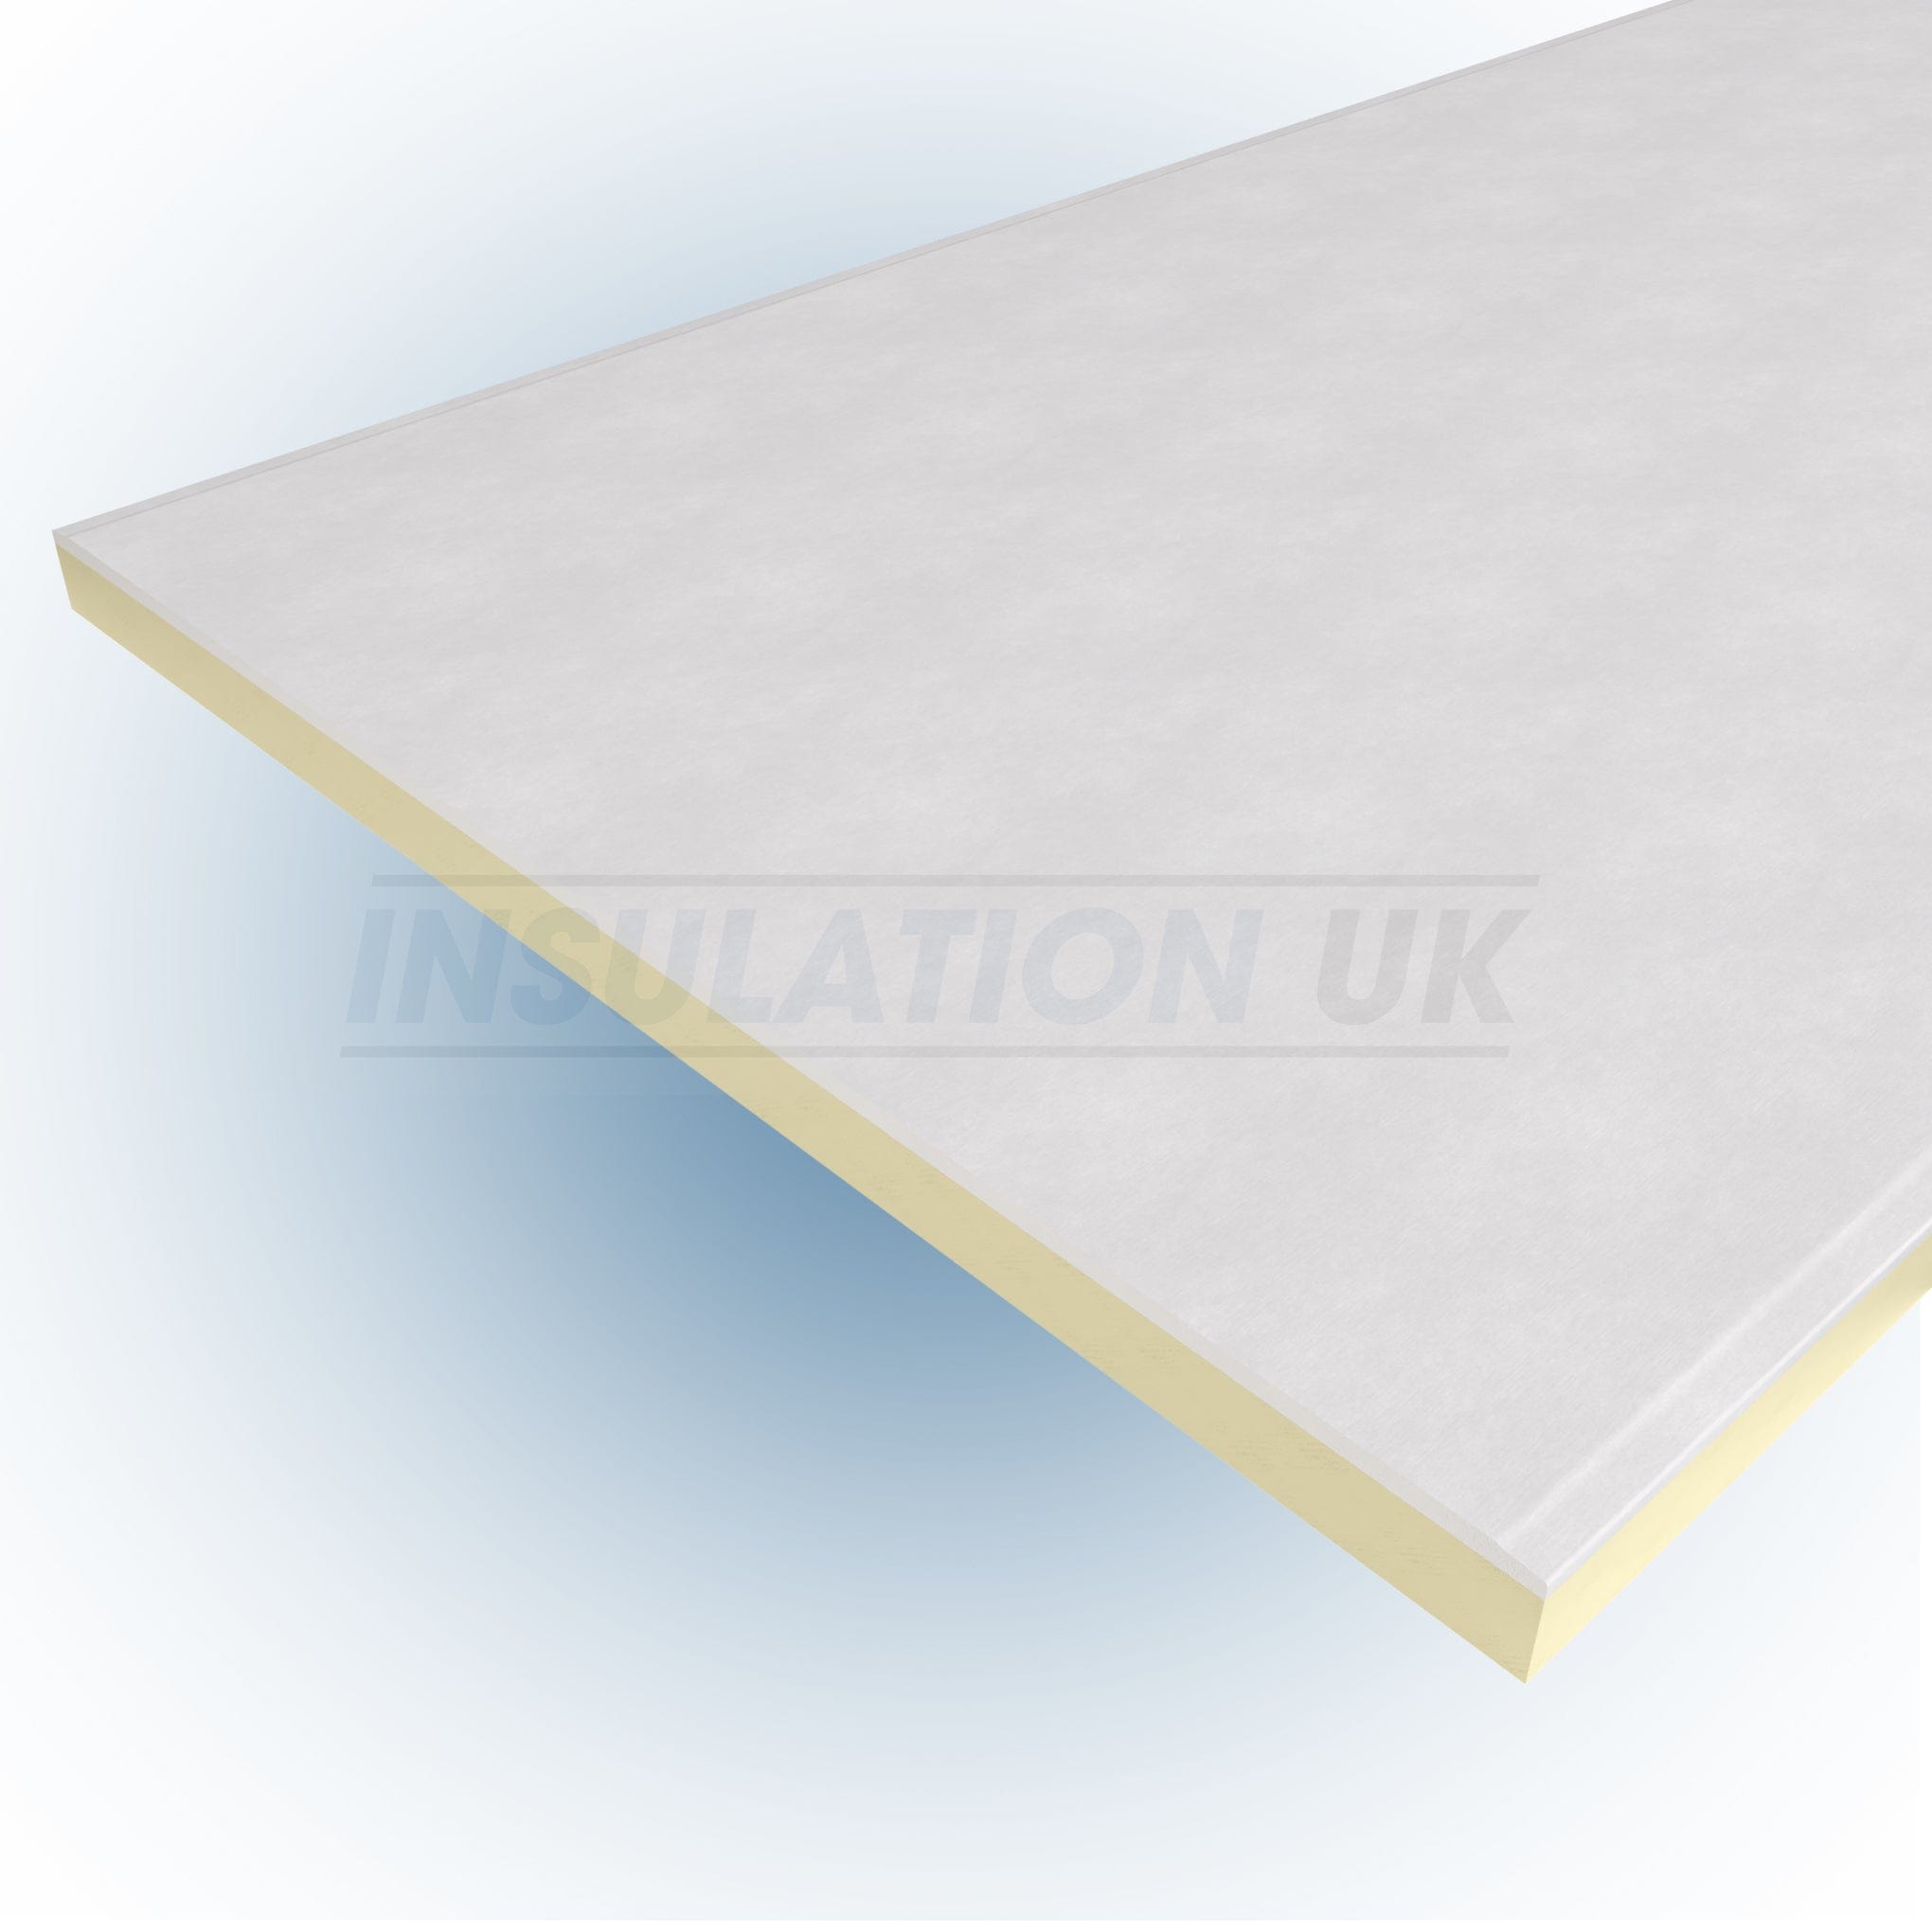 Tekwarm Insulation Tekwarm PIR Insulated Plasterboard - Thermal Laminate Board | 2400mm x 1200mm x 37.5mm BM02035 Tekwarm PIR Insulated Plasterboard - Thermal Laminate 2400 x 1200 x 37.5mm